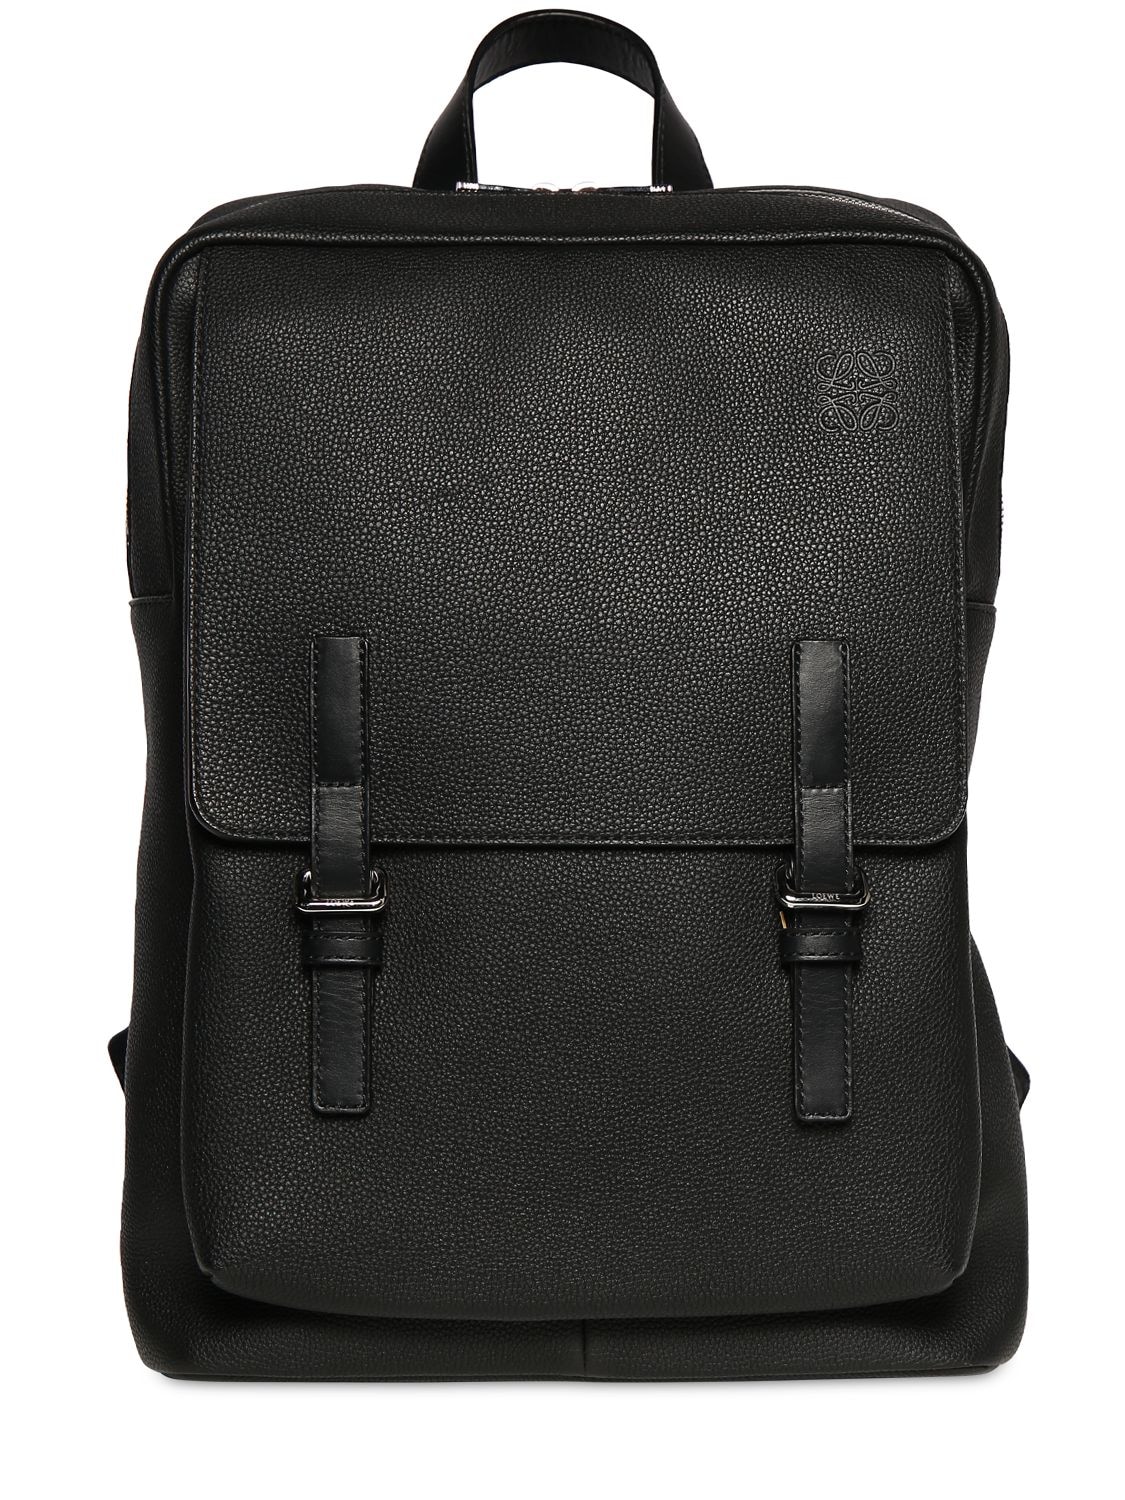 Loewe - Military leather backpack - Black | Luisaviaroma